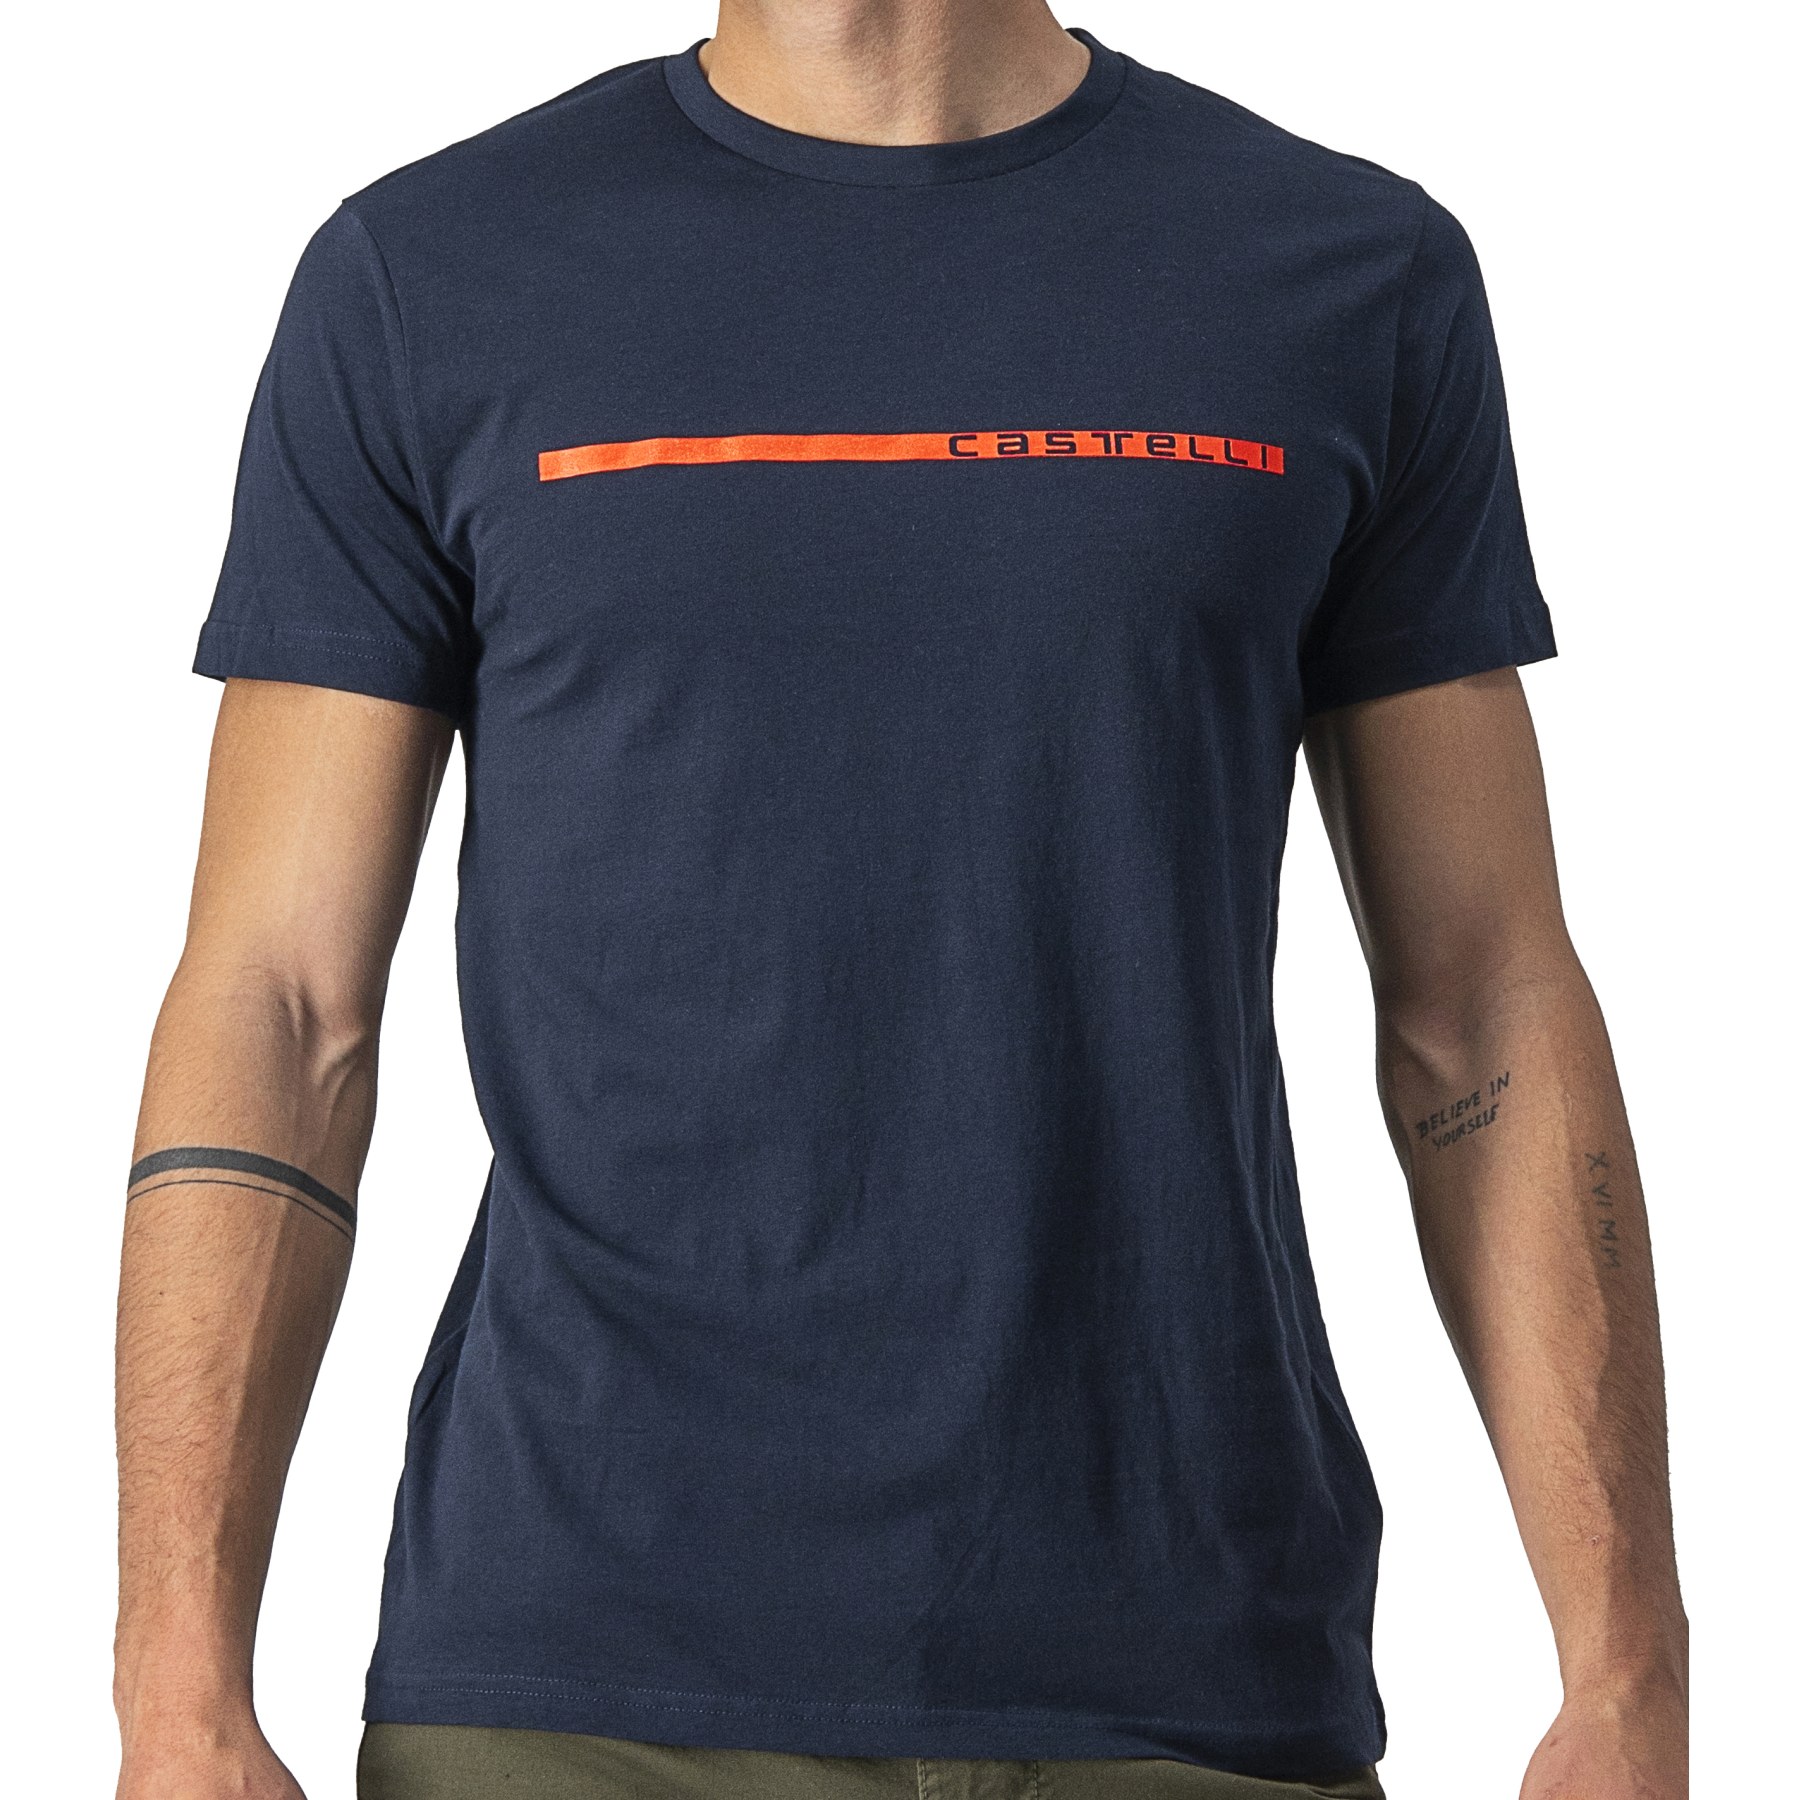 Produktbild von Castelli Ventaglio T-Shirt Herren - savile blue/red 414